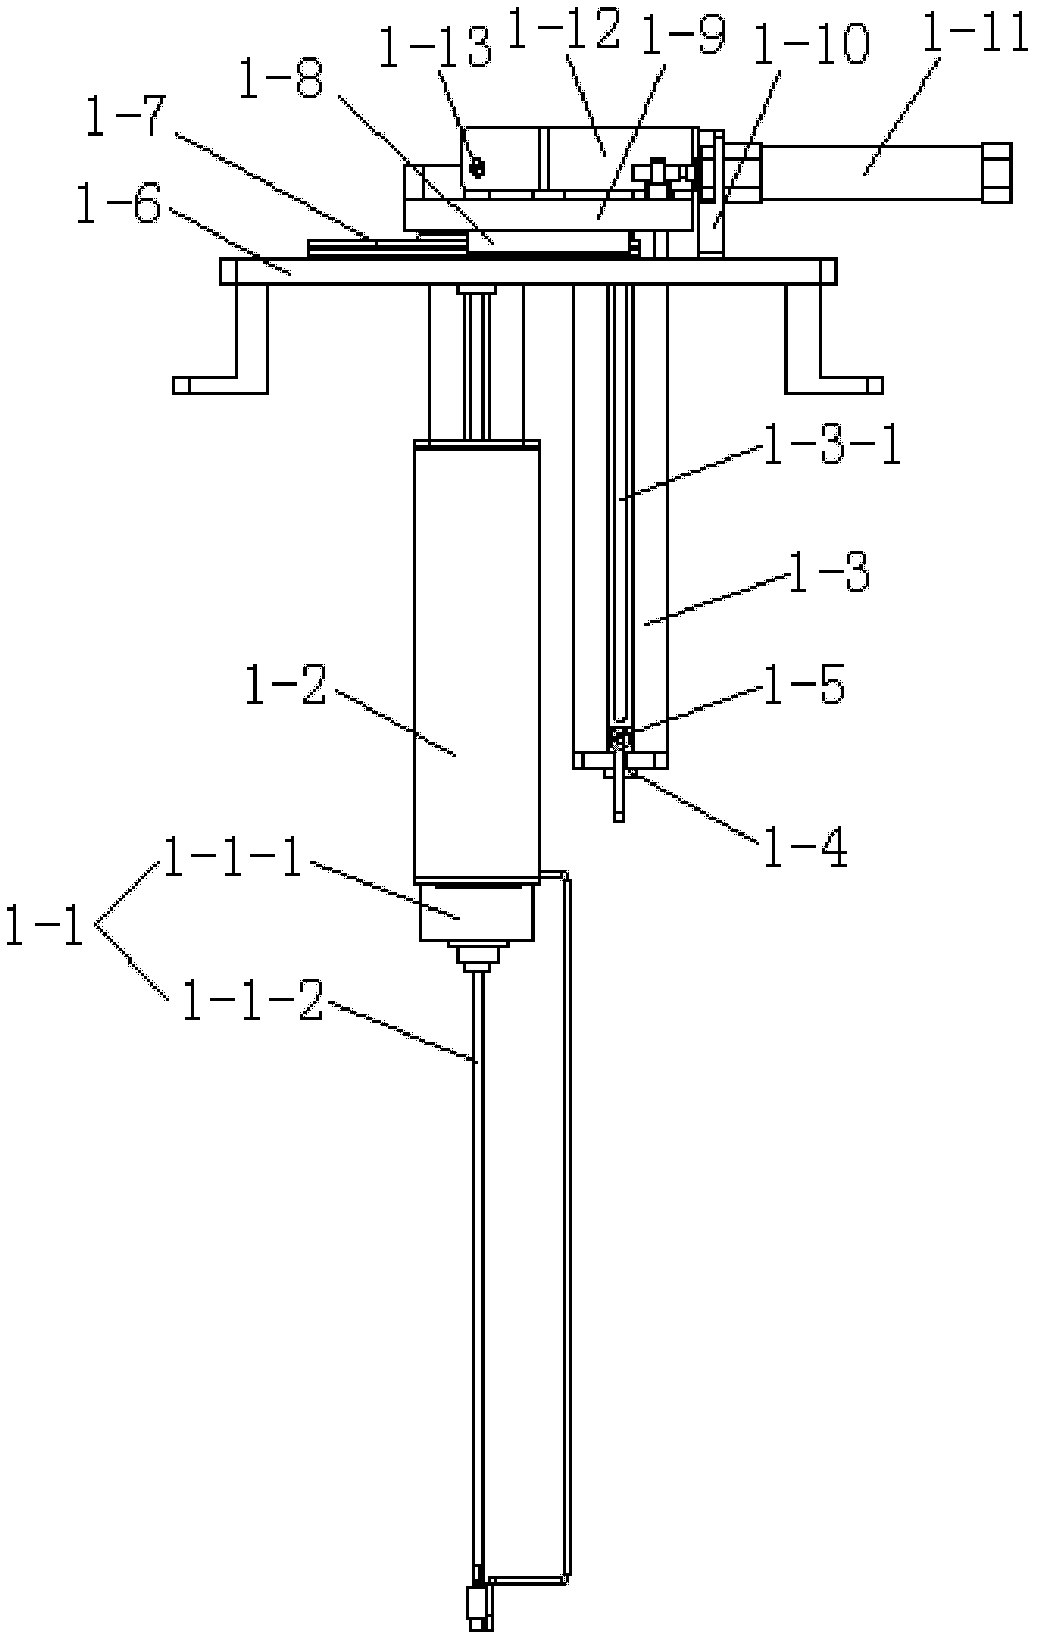 Buzzer placing mechanism